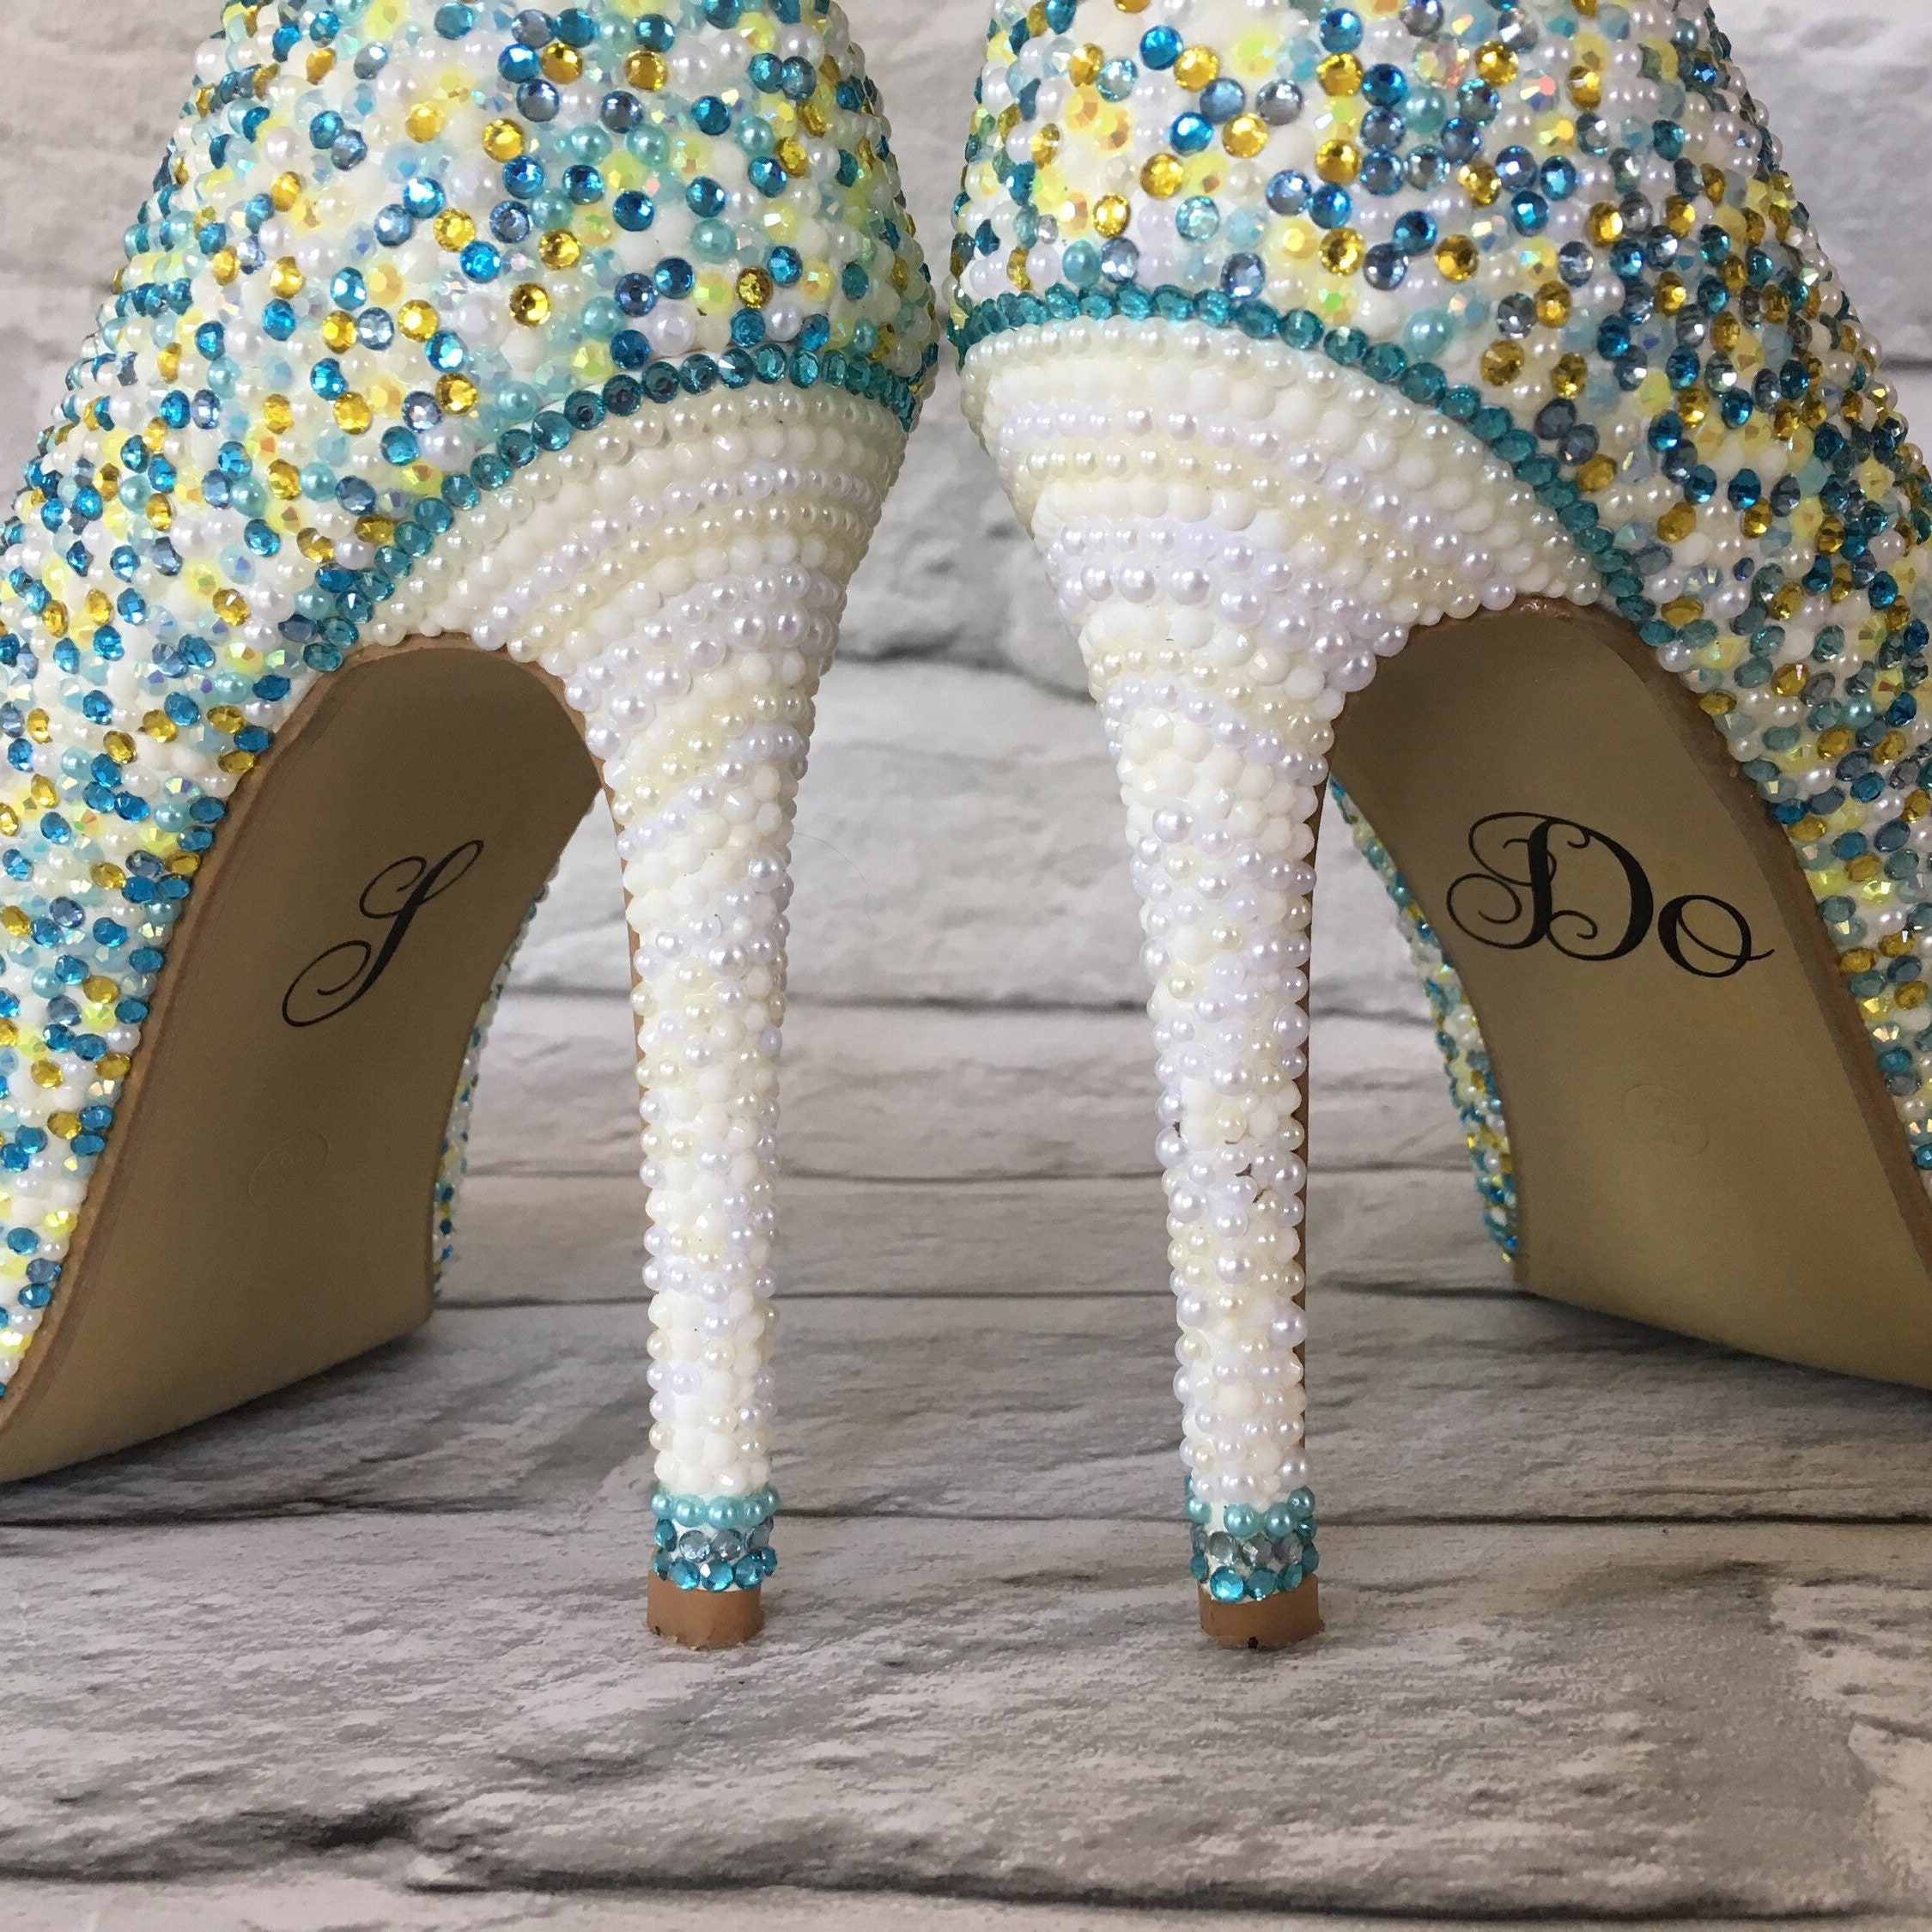 I Do & Me Too Shoe Stickers Diamante Wedding Shoe Crystals Blue Bride & Groom 